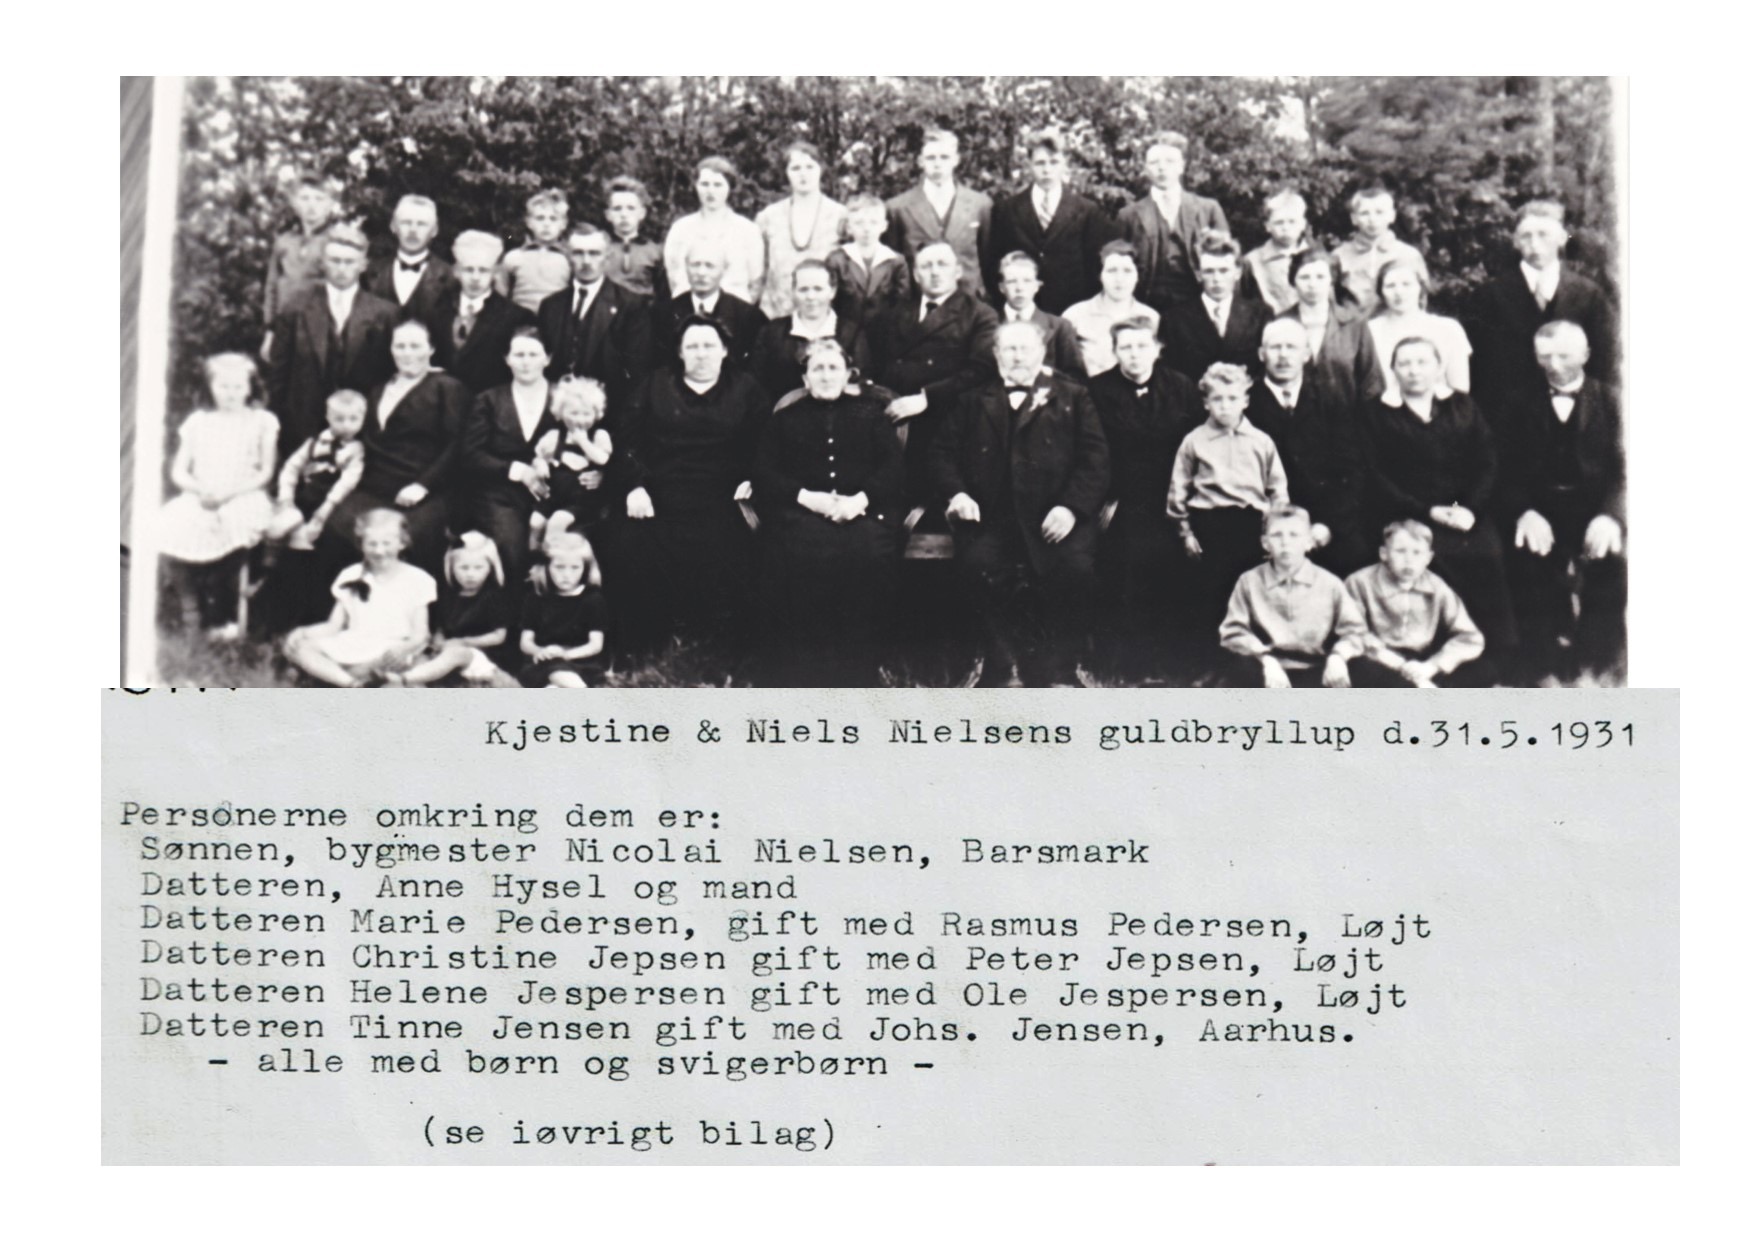 Kjestine & Niels Nielsens guldbryllup 1931 